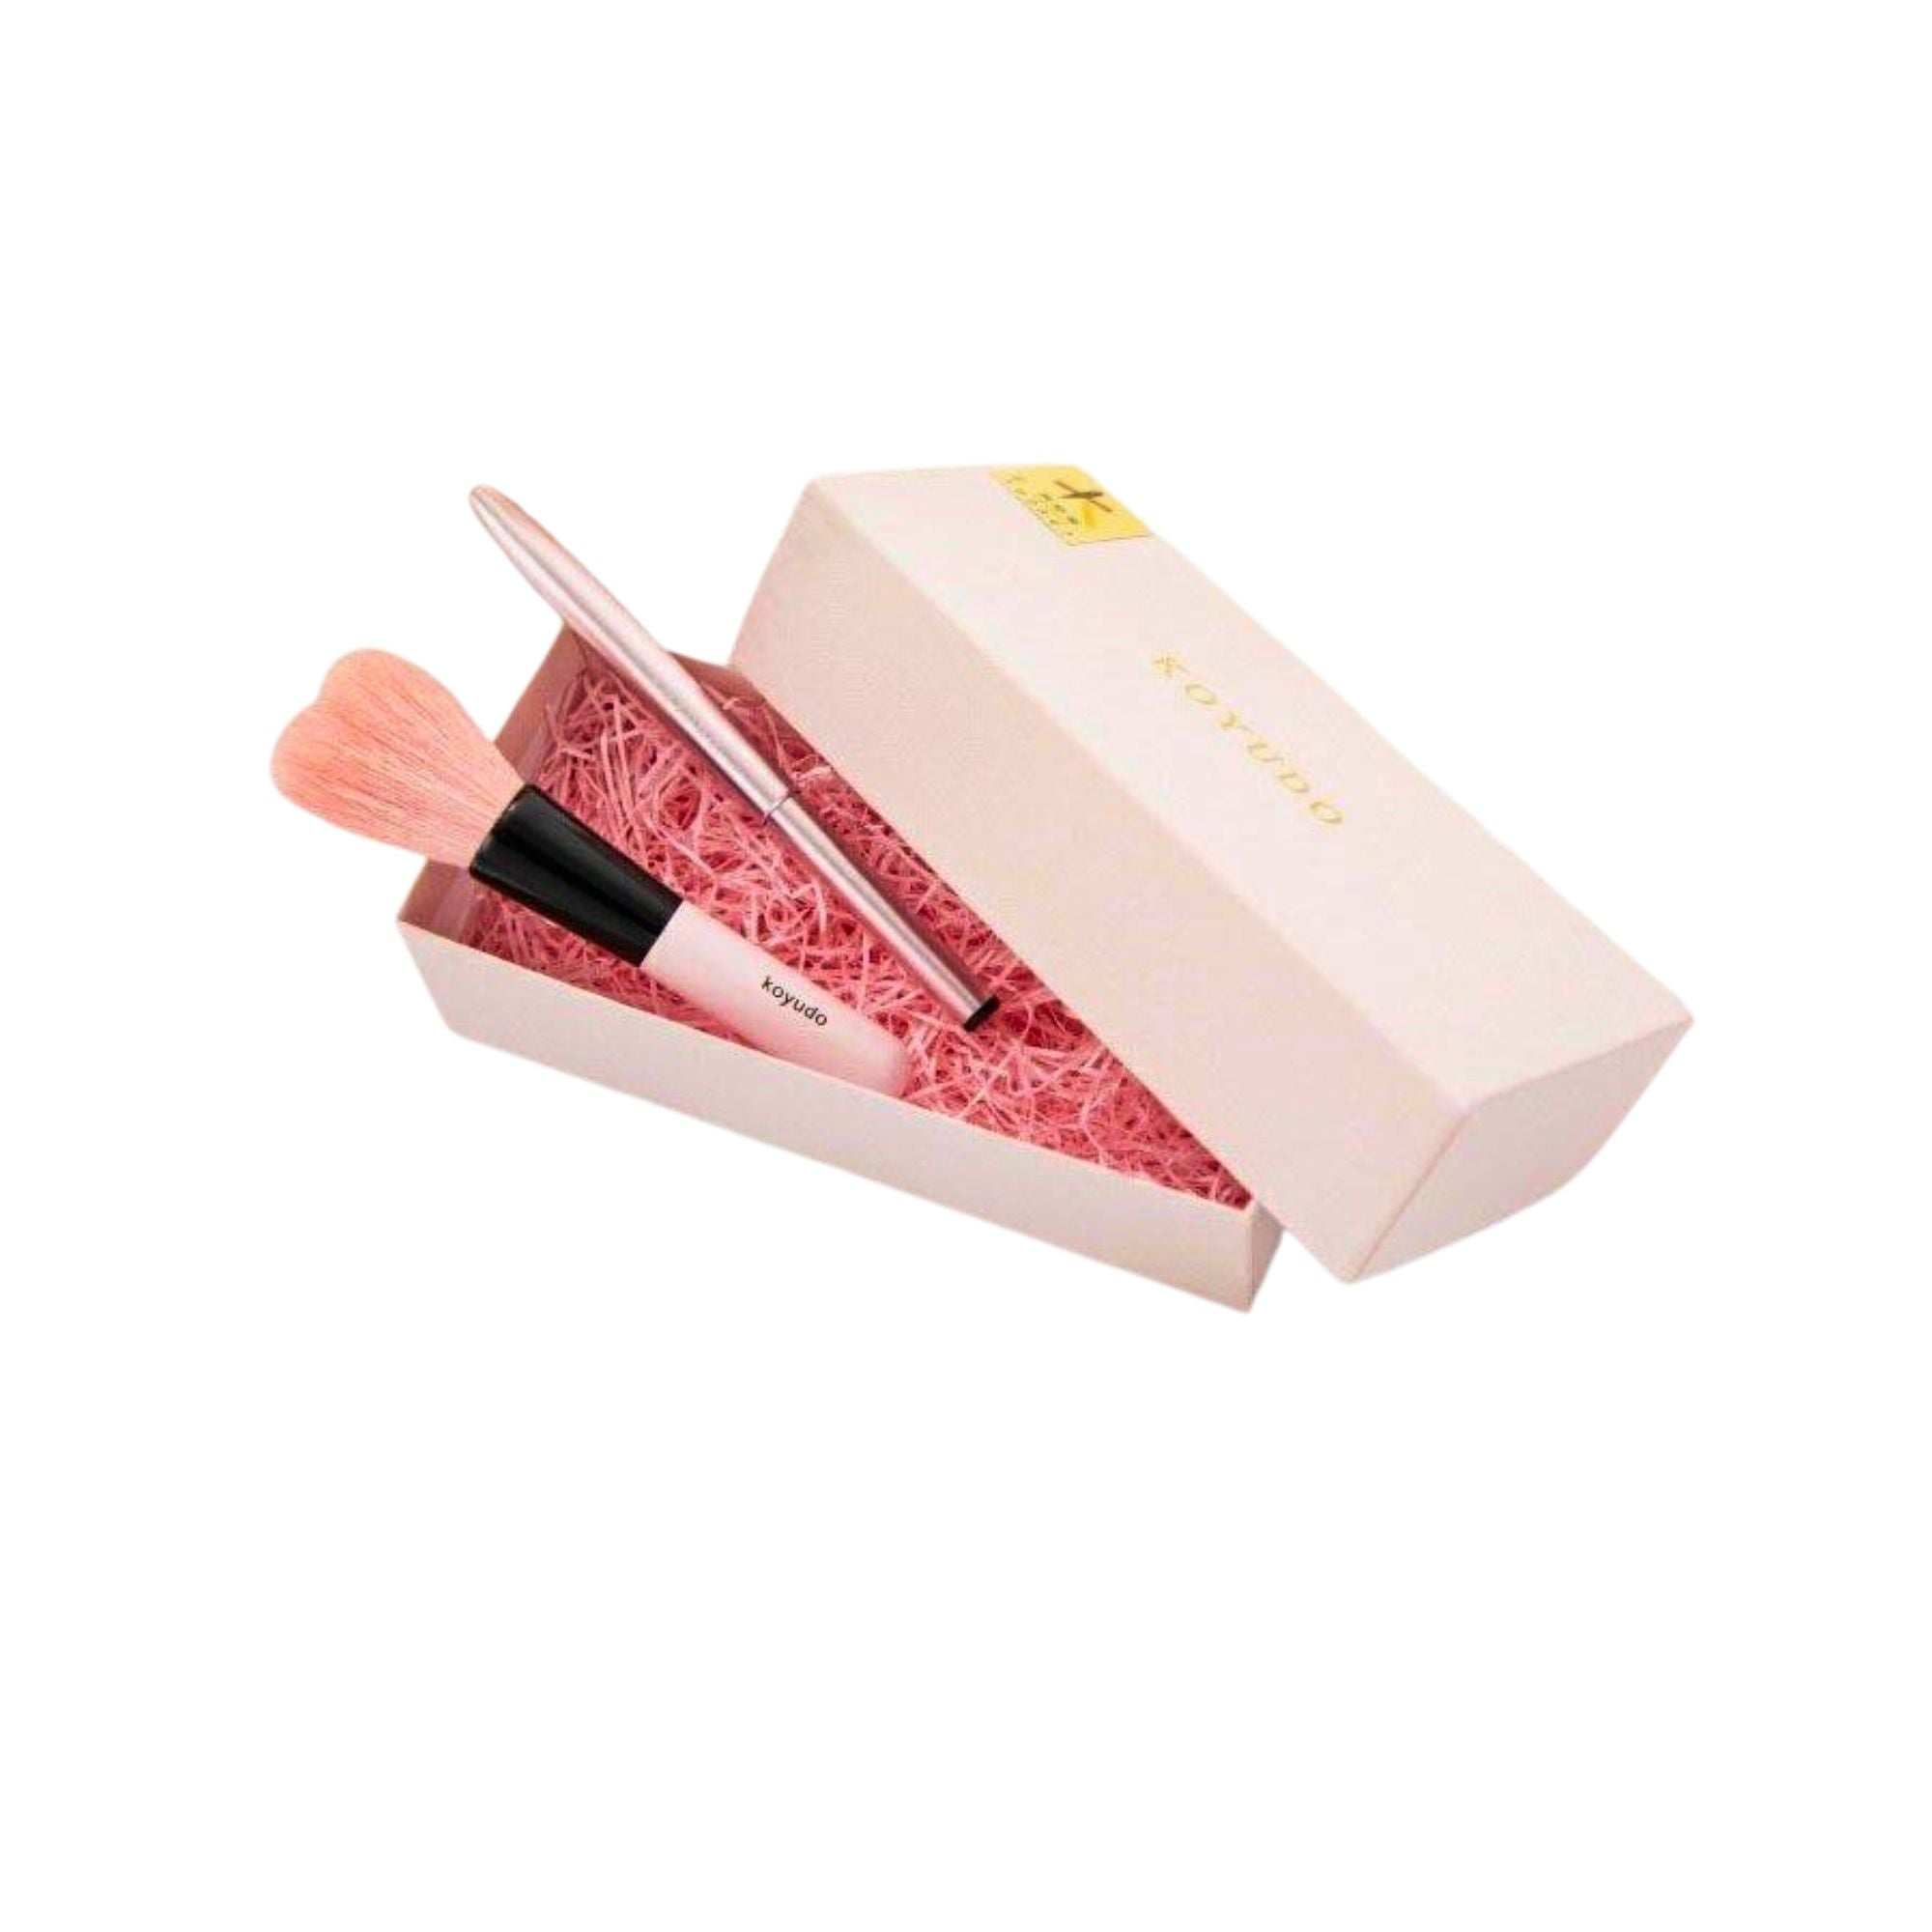 Koyudo Makeup Brush Gift Box (Pink)